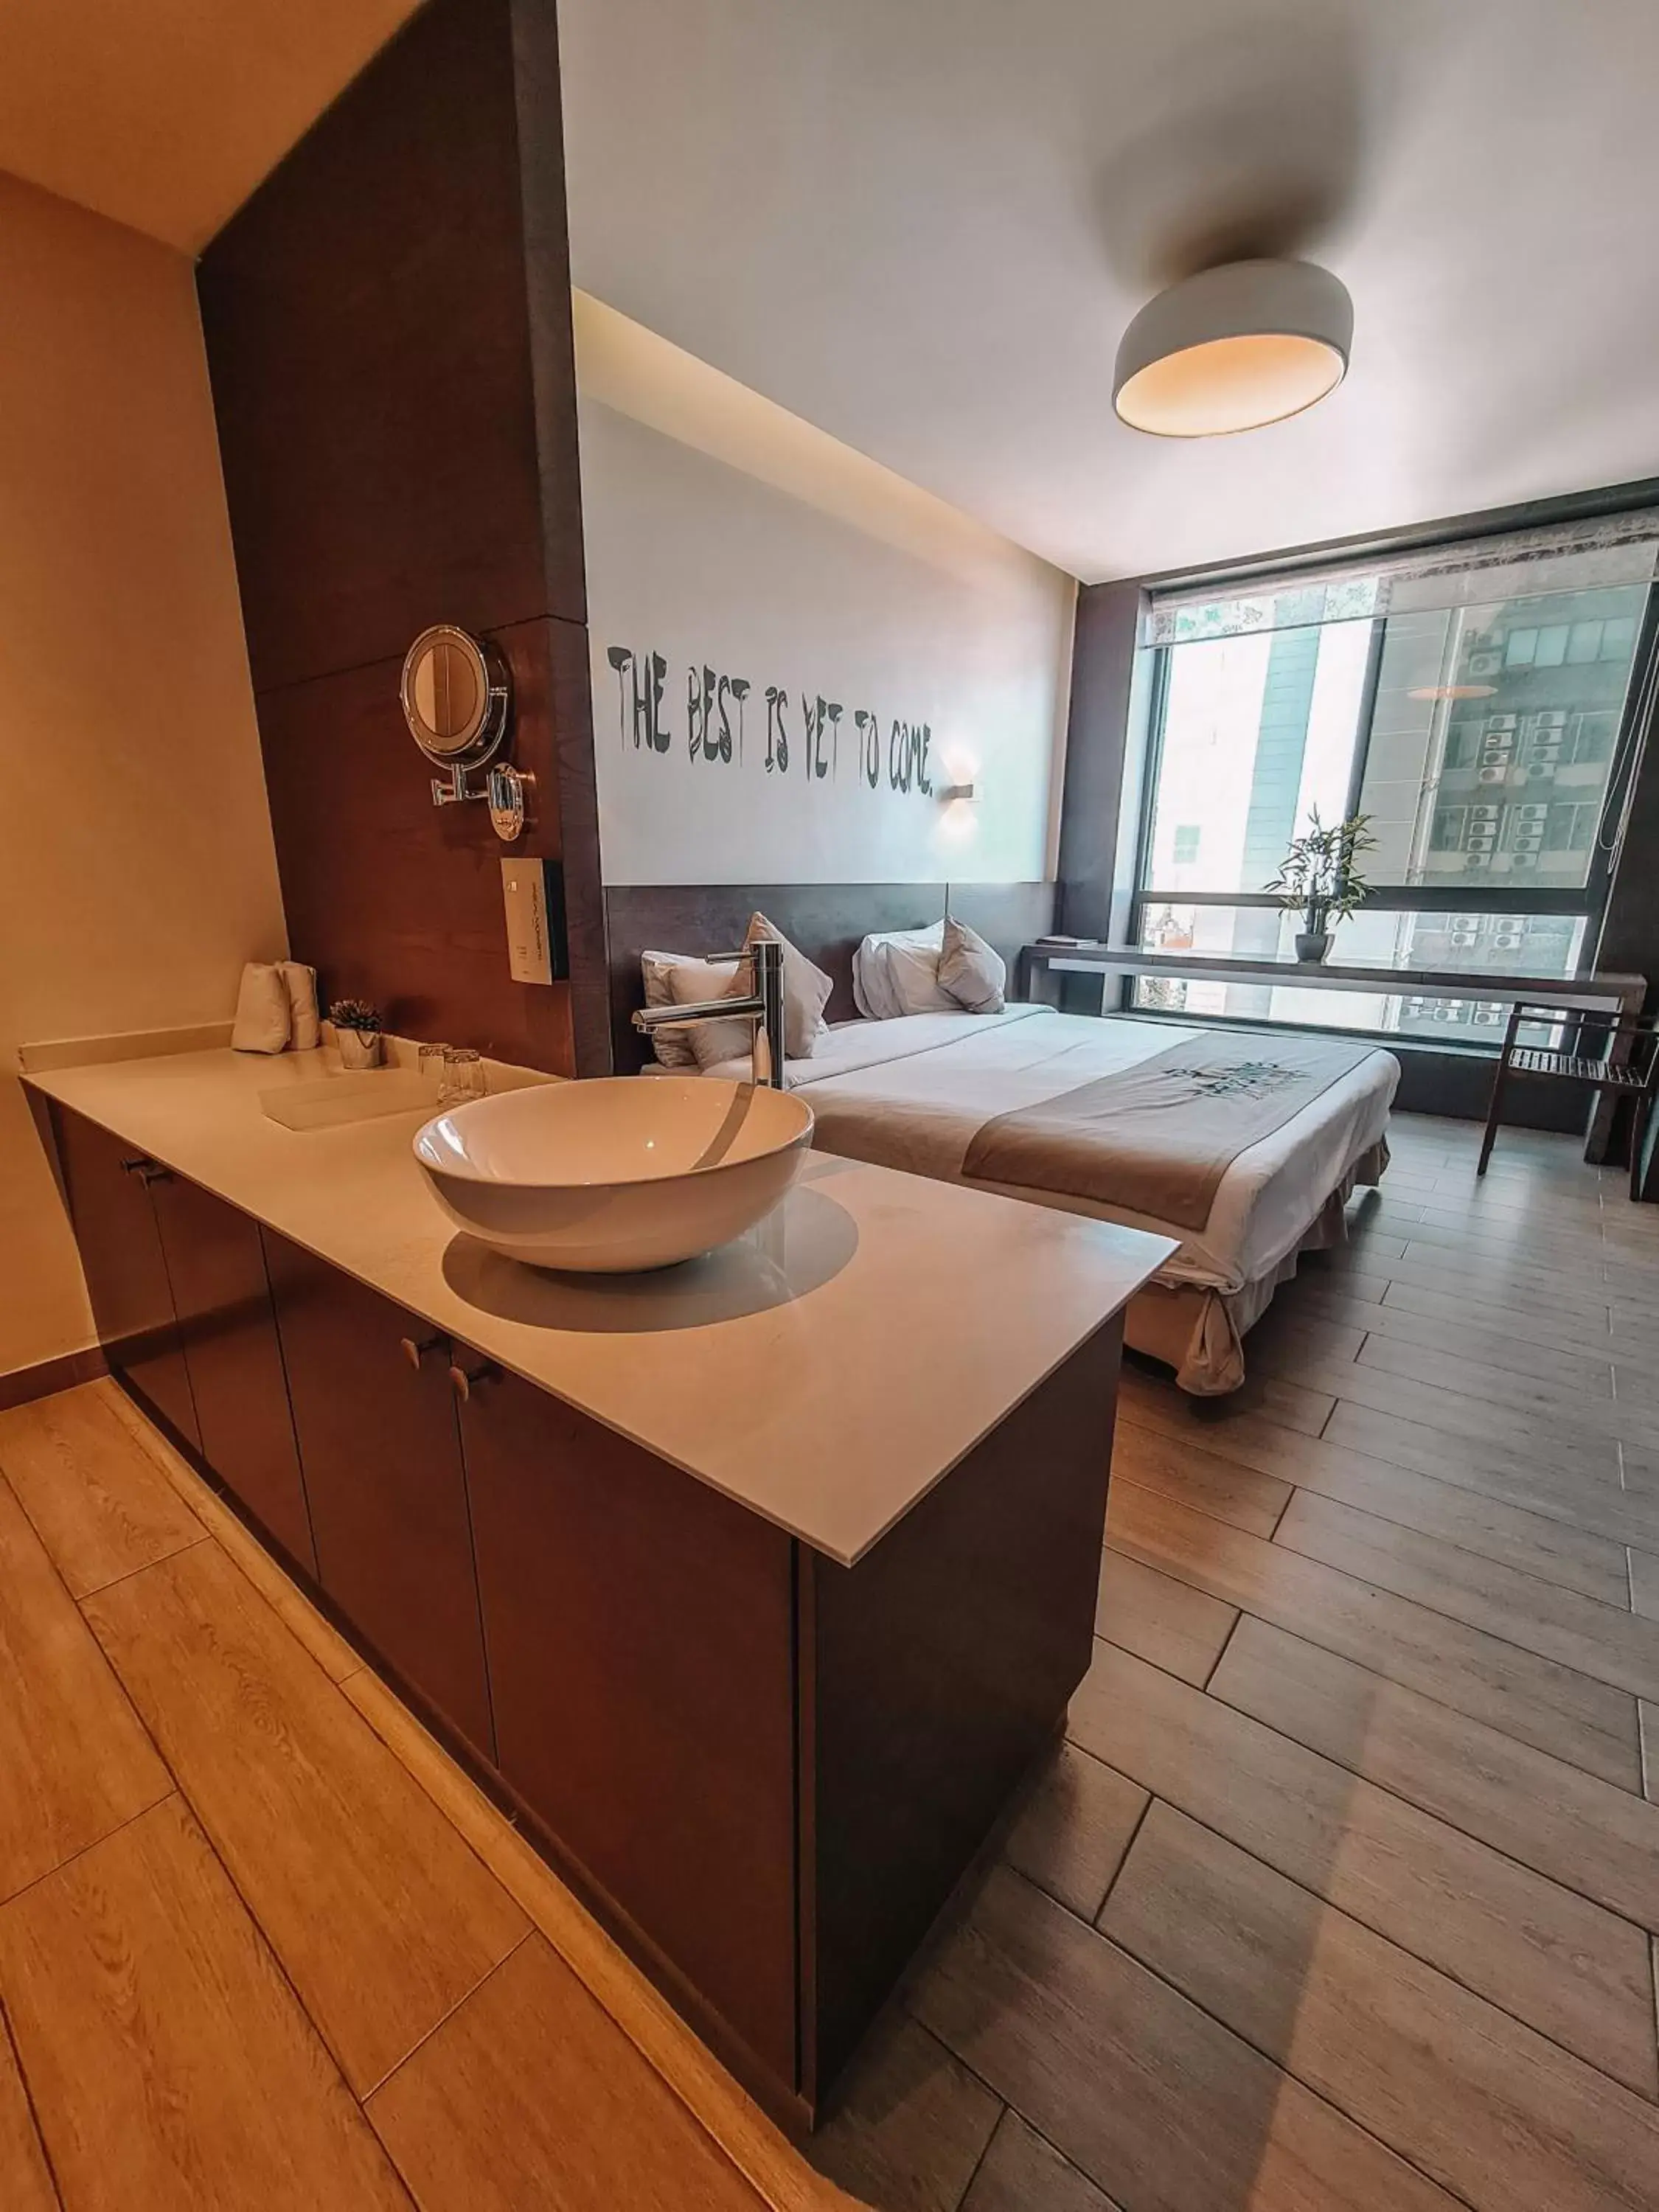 Bedroom, Bathroom in Three O Nine Hotel